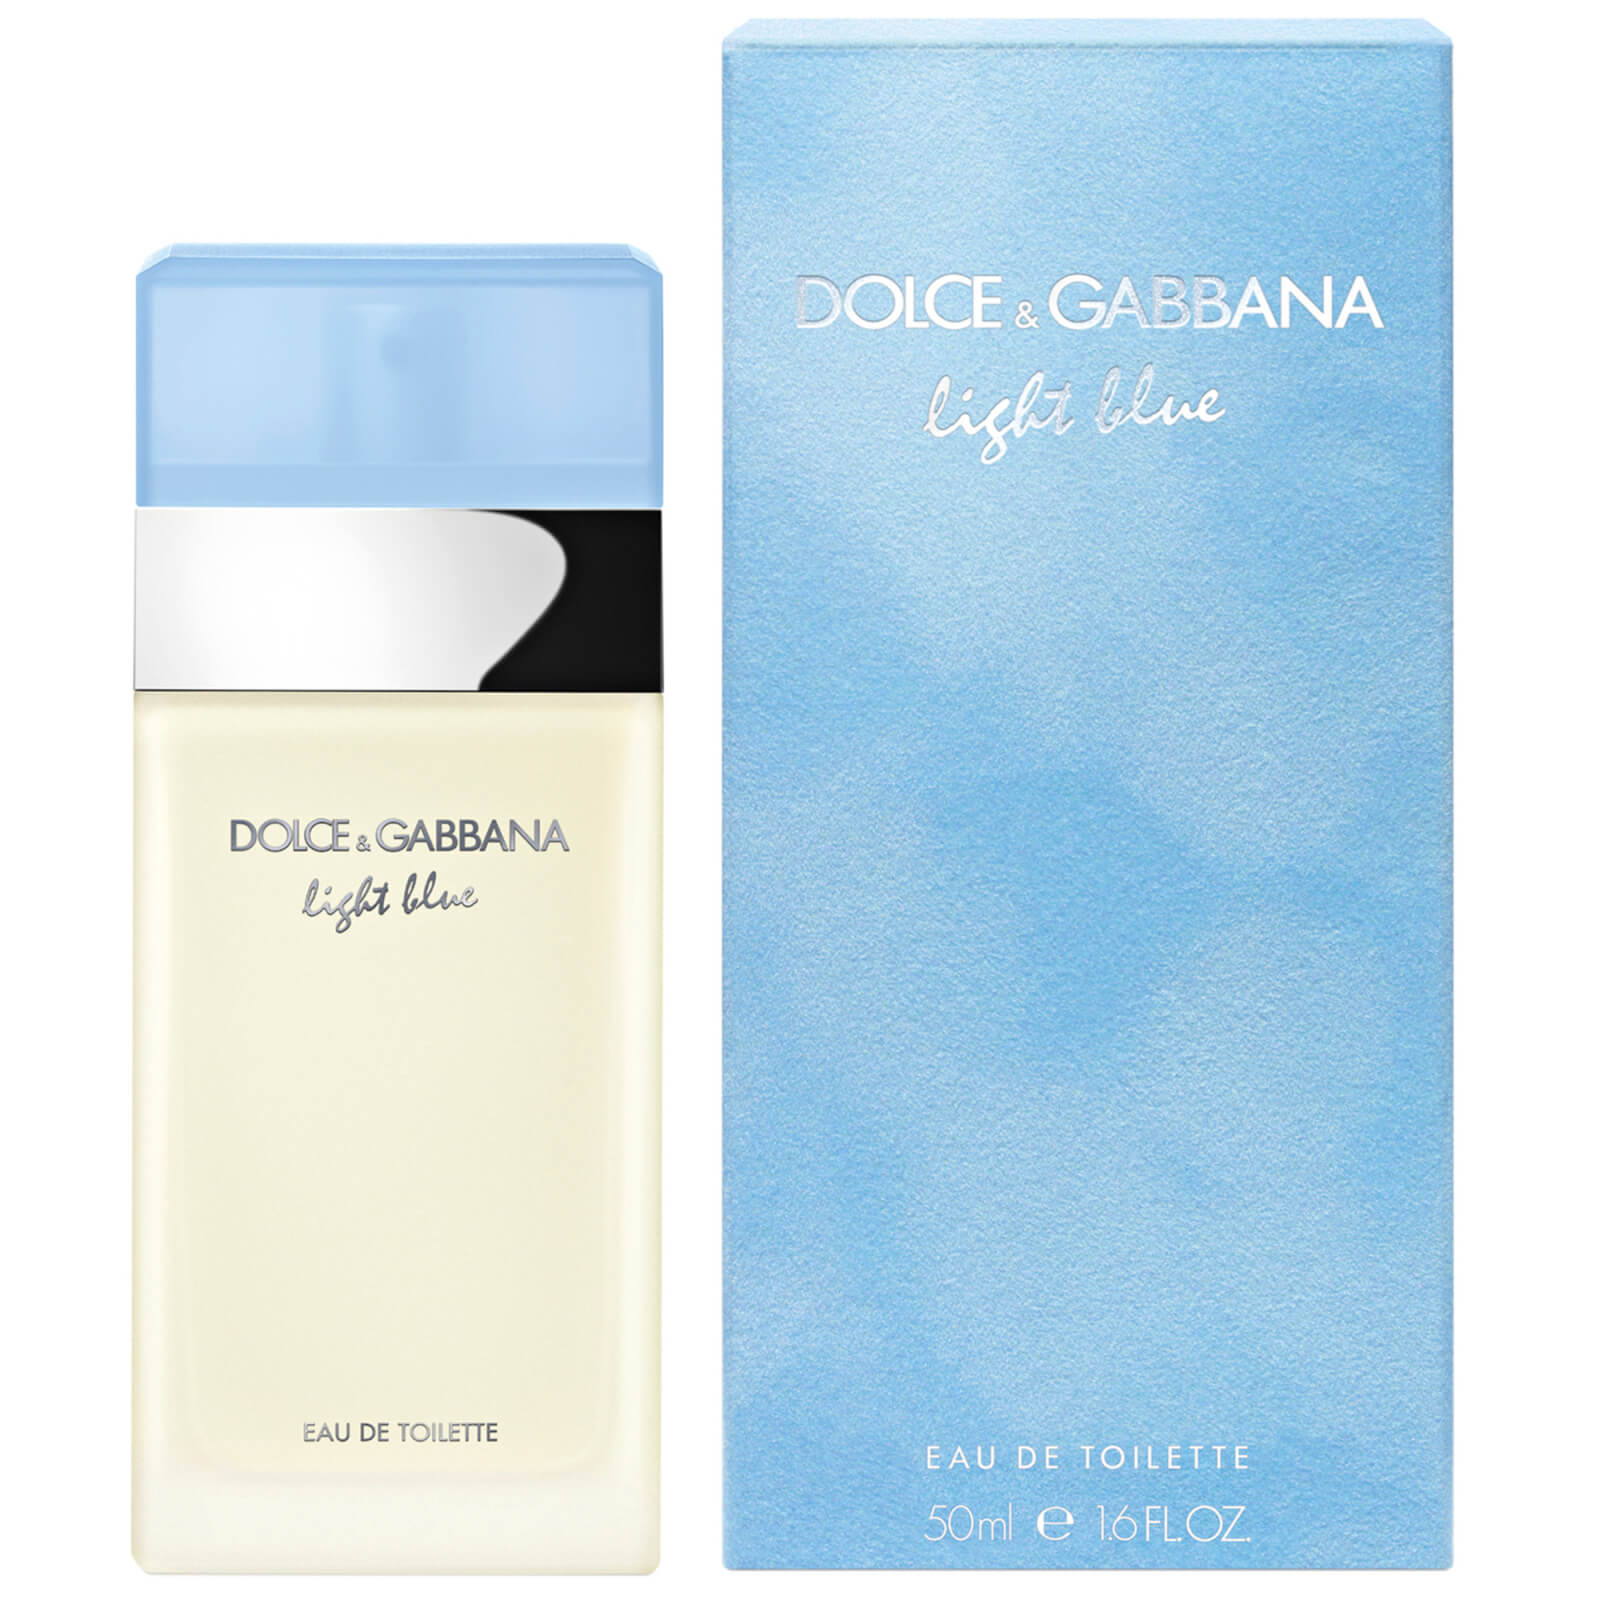 Image of Dolce&Gabbana Light Blue Eau de Toilette 50ml